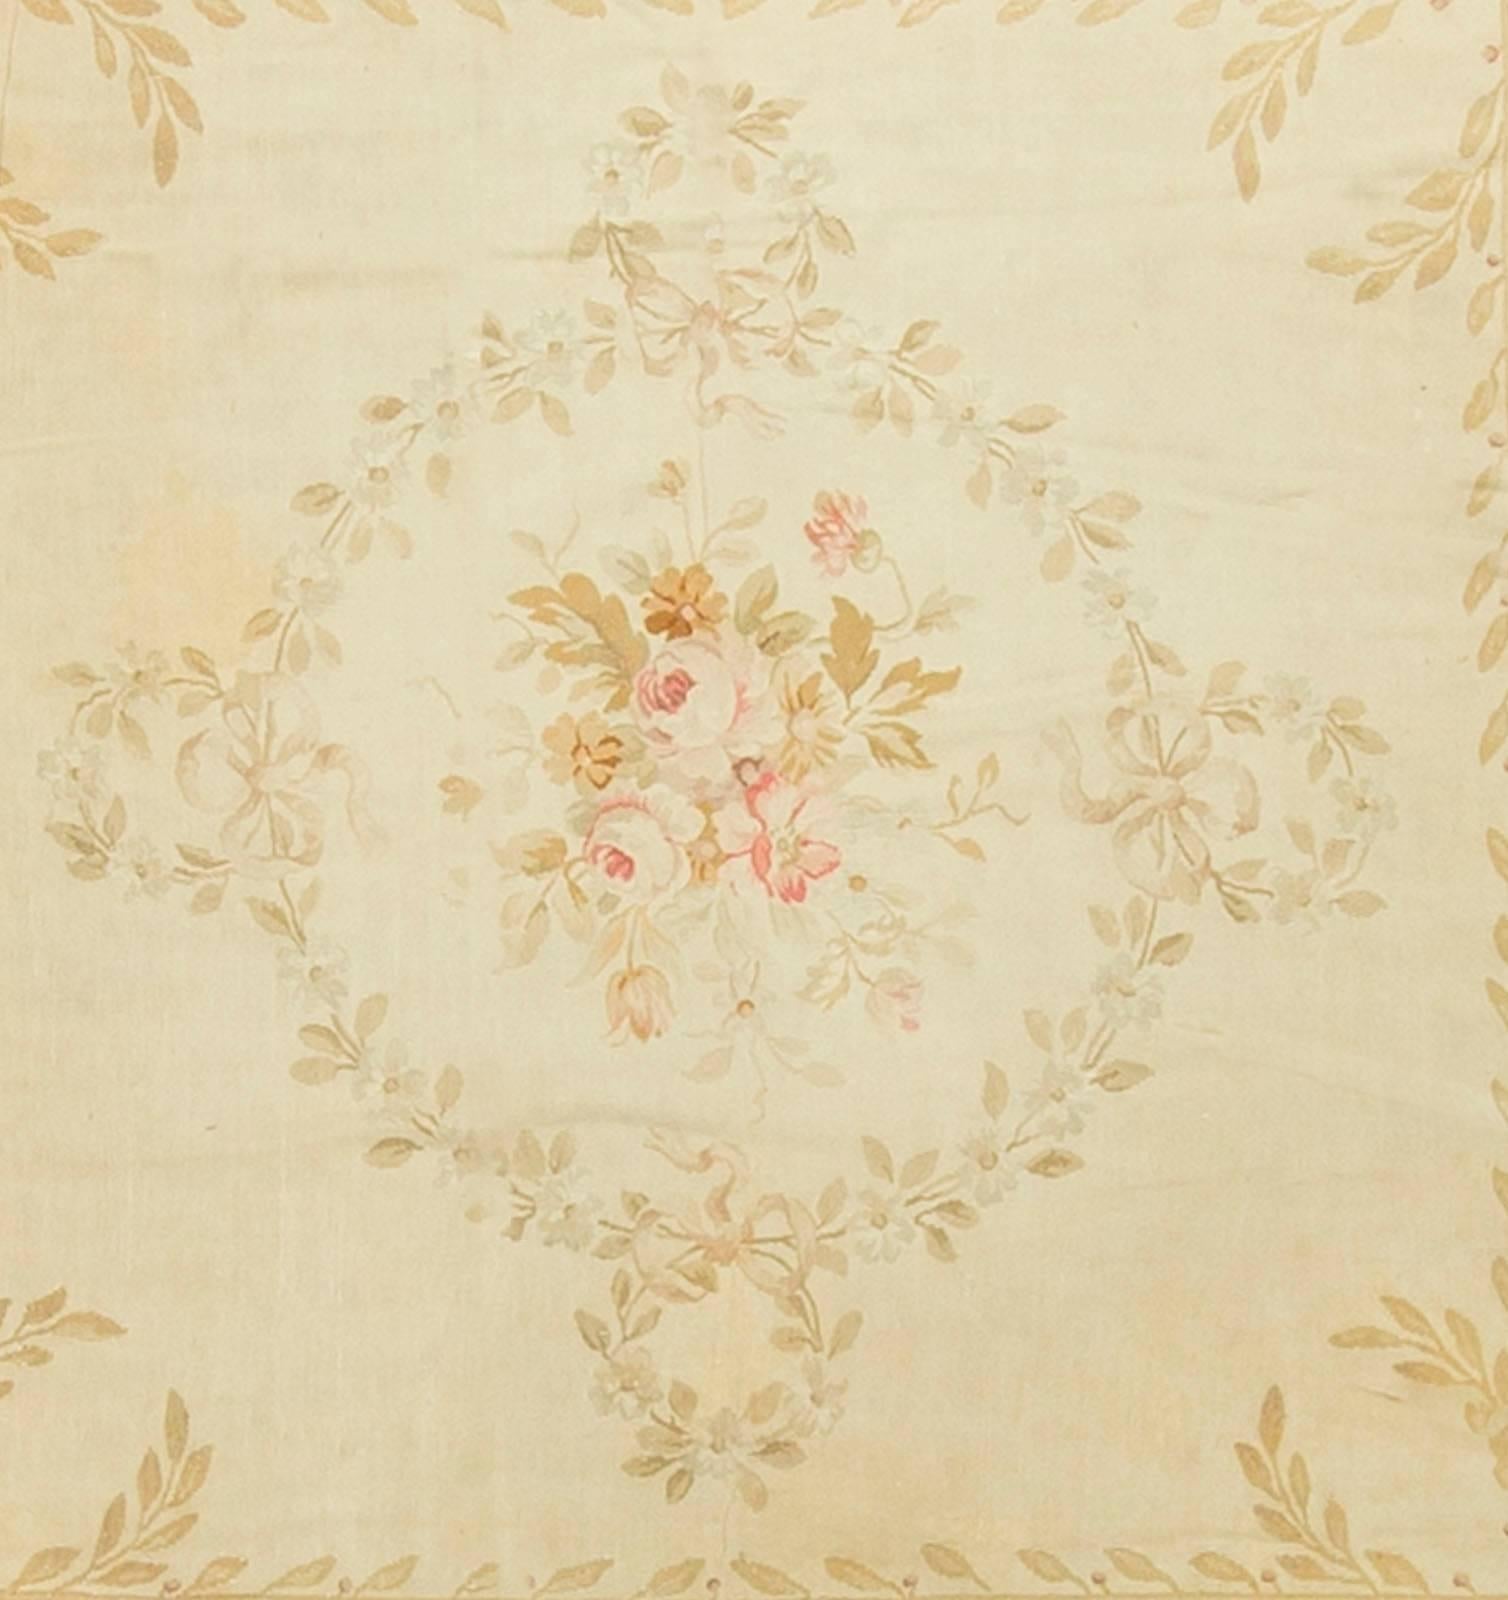 Französischer Aubusson-Teppich, um 1890. Ein wunderschönes quadratisches Aubusson in den typischen weichen Creme- und Elfenbeinfarben, die für Aubussons dieser Zeit so typisch sind. Das an den Ufern der Creuse in Frankreich gelegene Aubusson ist